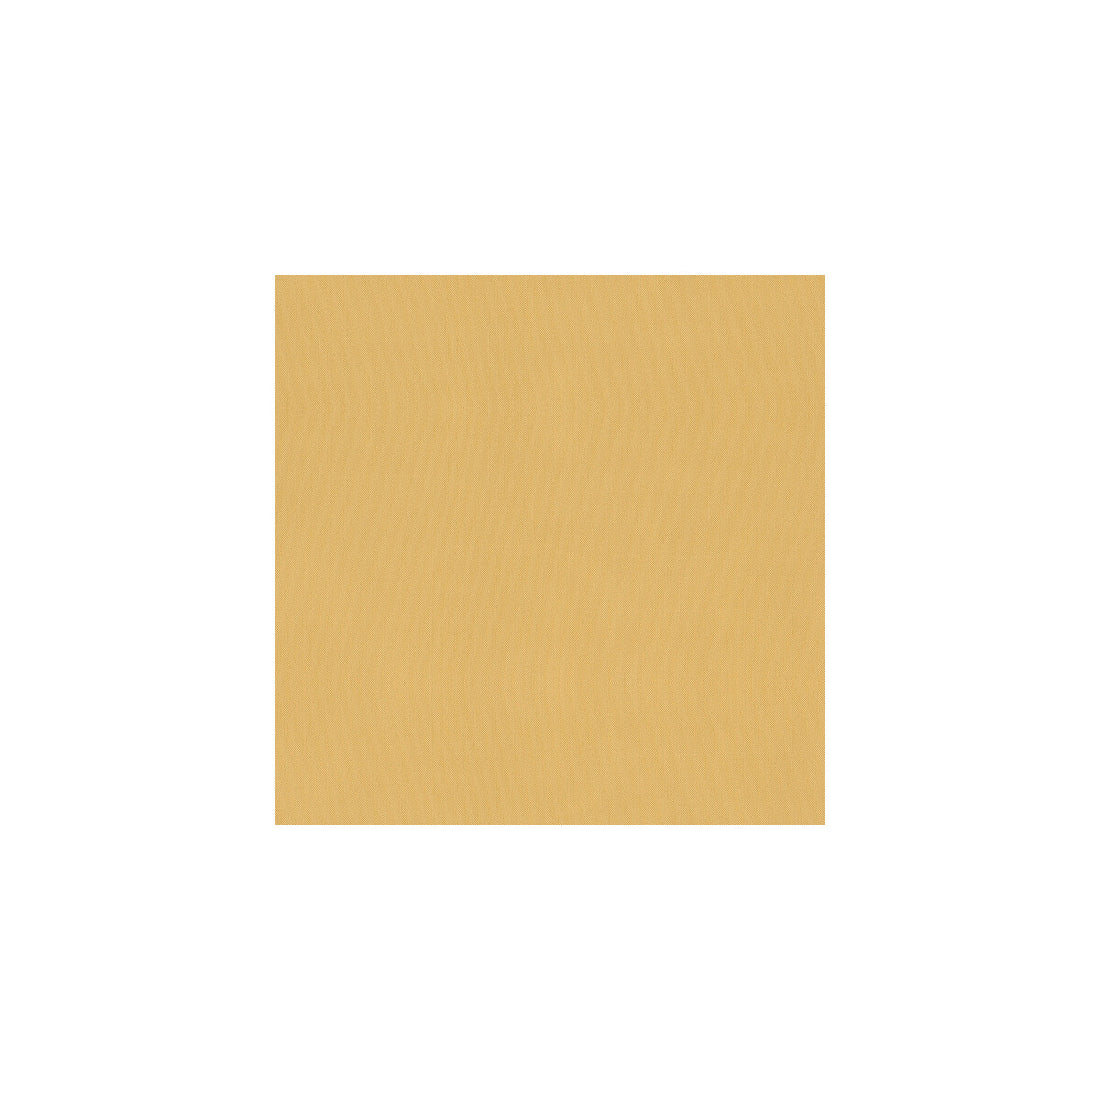 Kravet Basics fabric in 3751-16 color - pattern 3751.16.0 - by Kravet Basics